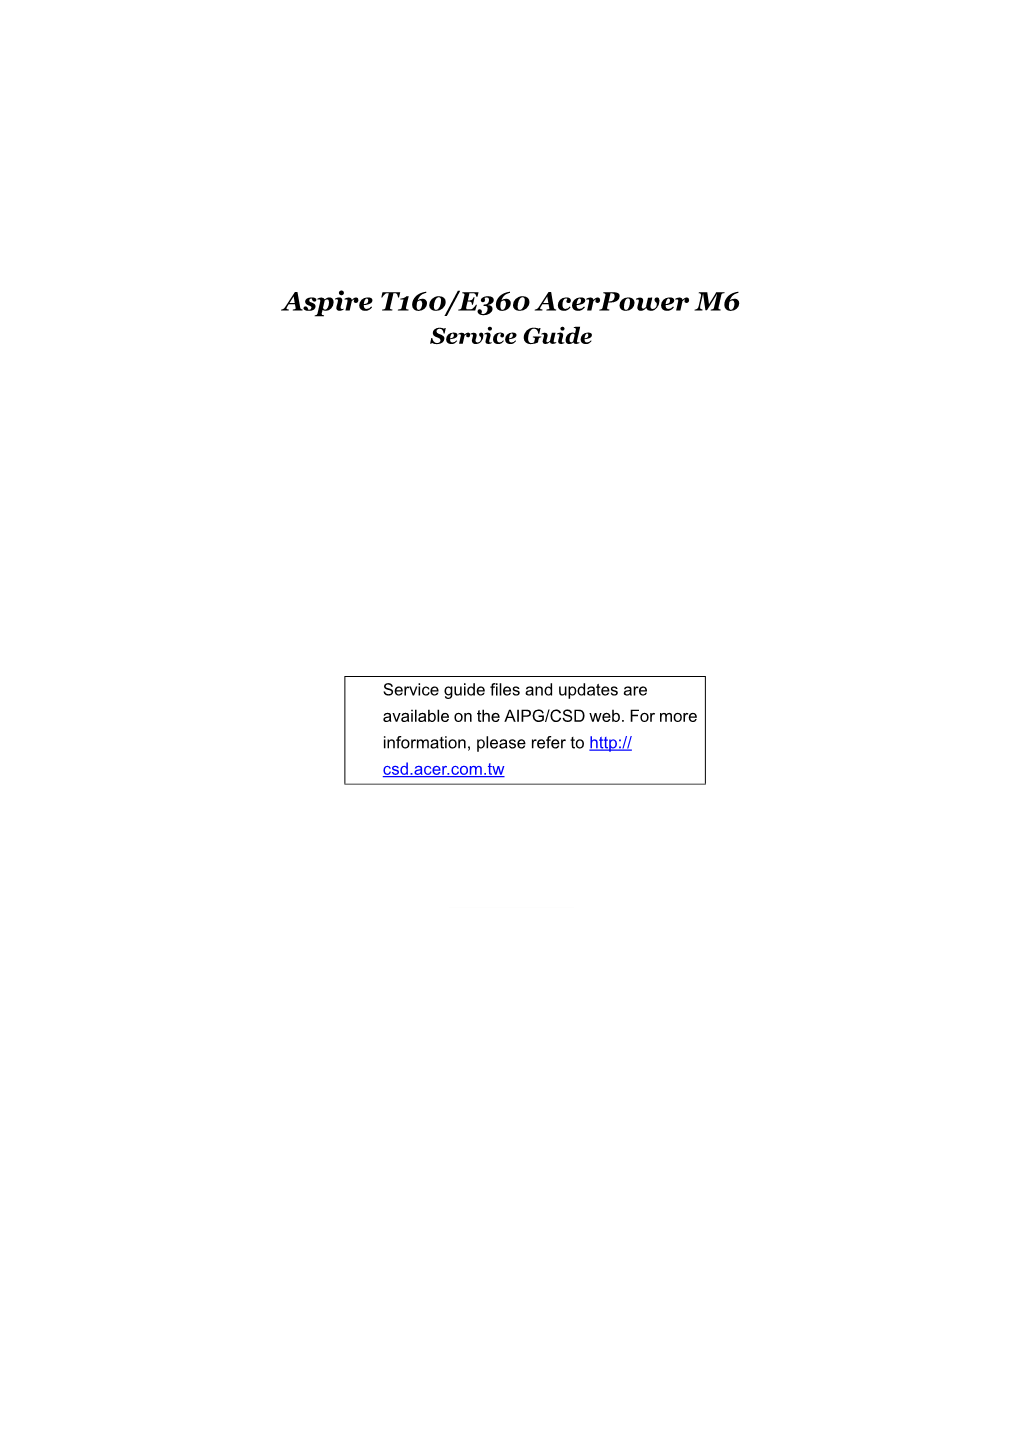 Aspire T160/E360 Acerpower M6 Service Guide